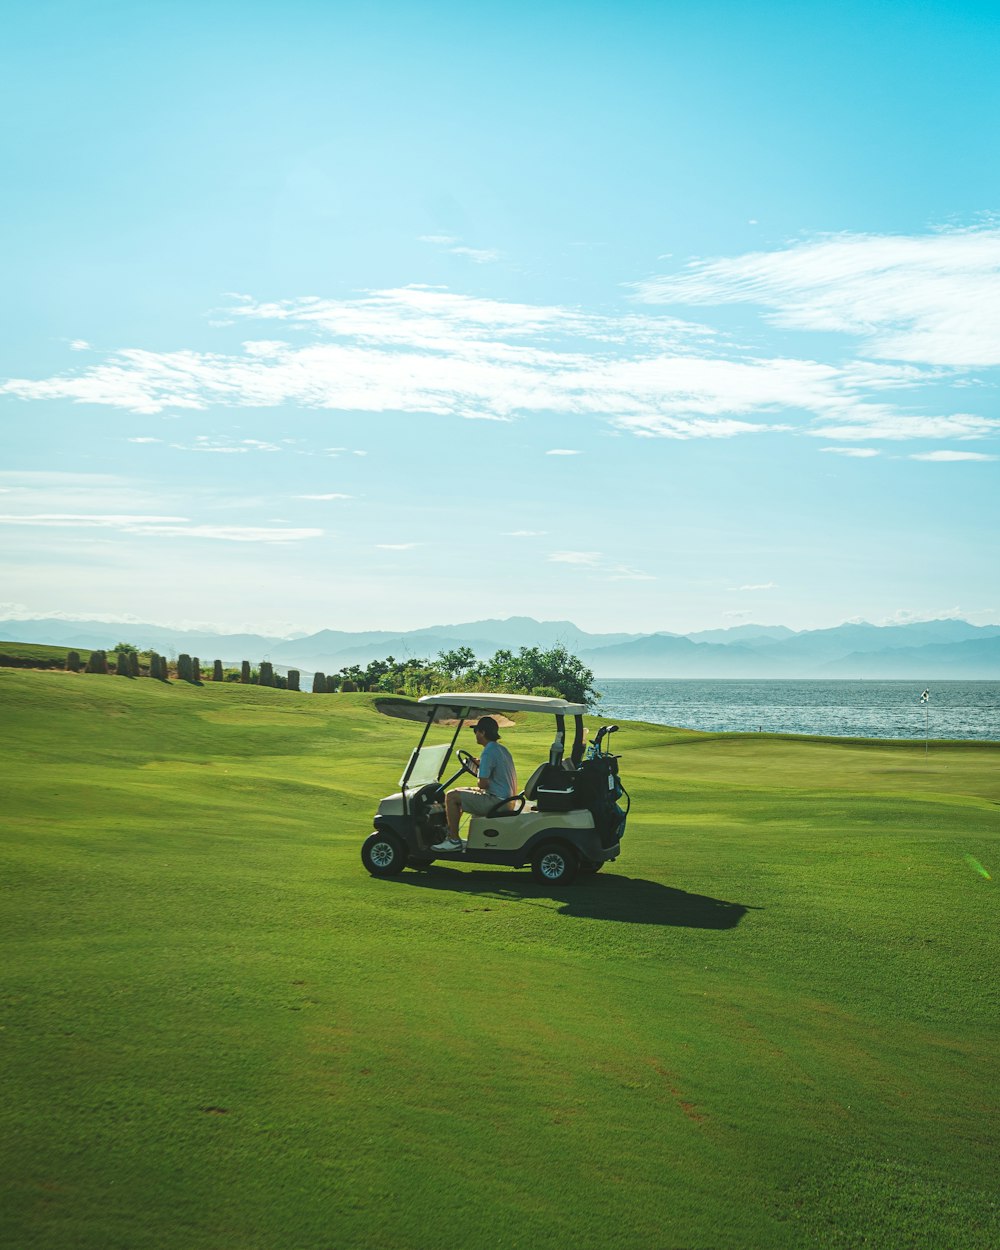 Un homme conduisant une voiturette de golf sur un terrain de golf